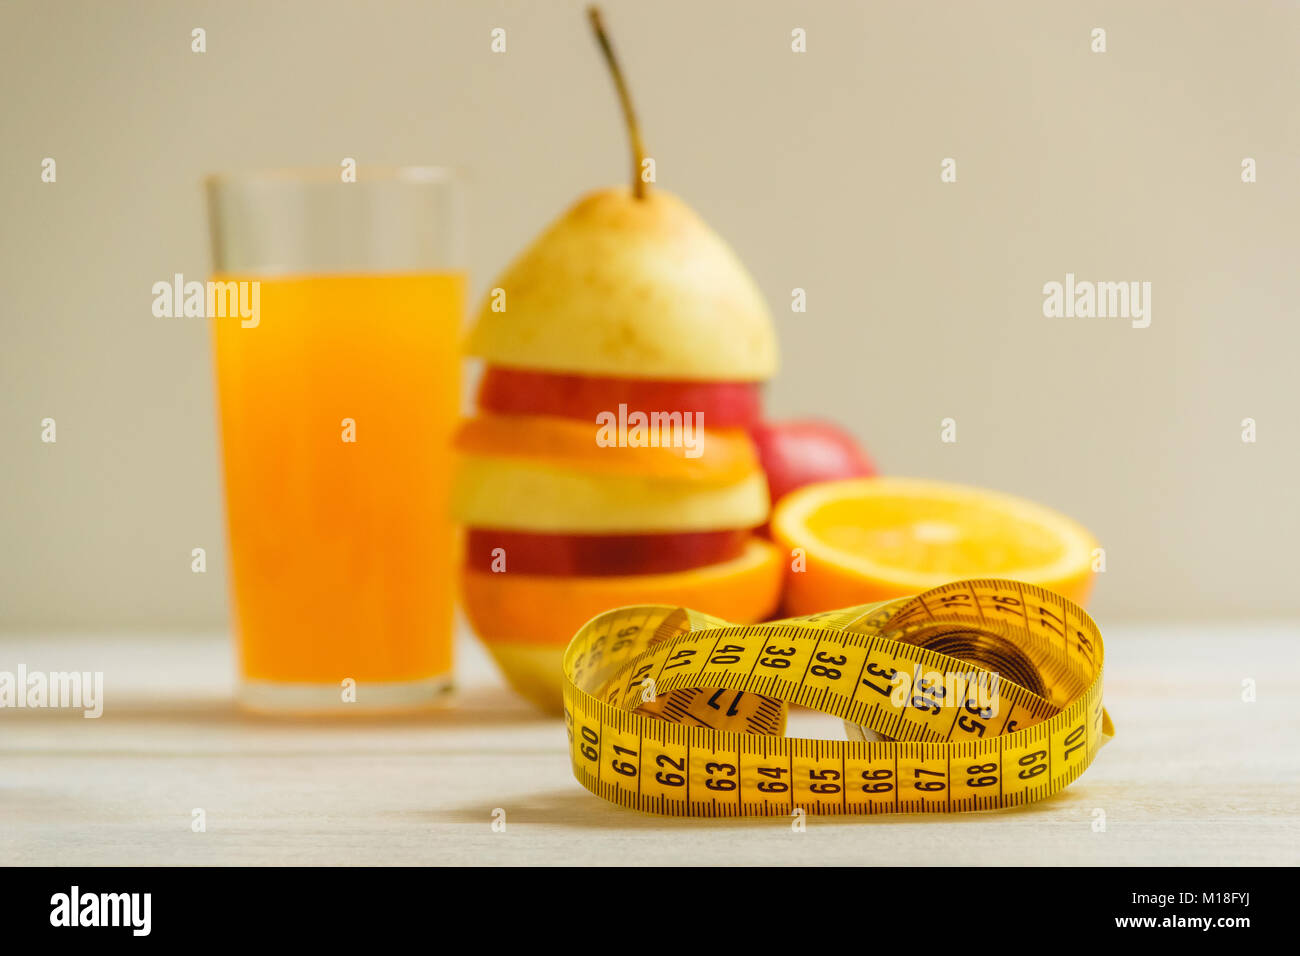 Ruban de mesure et de fruits frais sur la table en bois. Mode de vie sain régime alimentaire avec des fruits frais. Banque D'Images